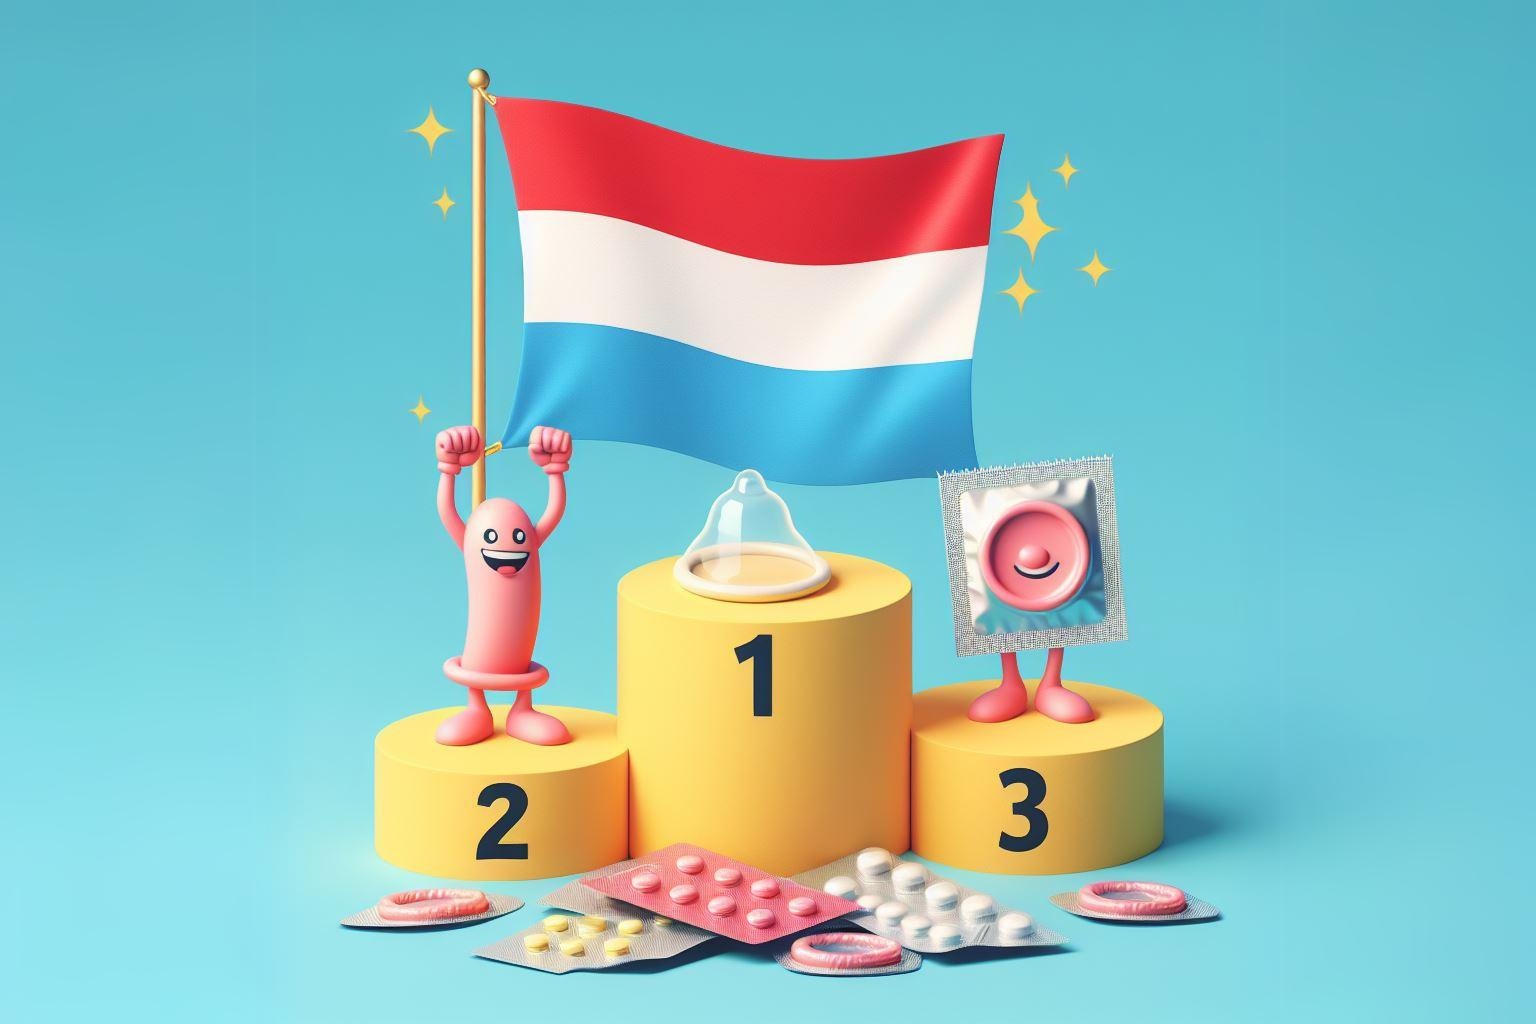 Lá cờ Luxembourg đứng số 1 trên bục chiến thắng về biện pháp tránh thai